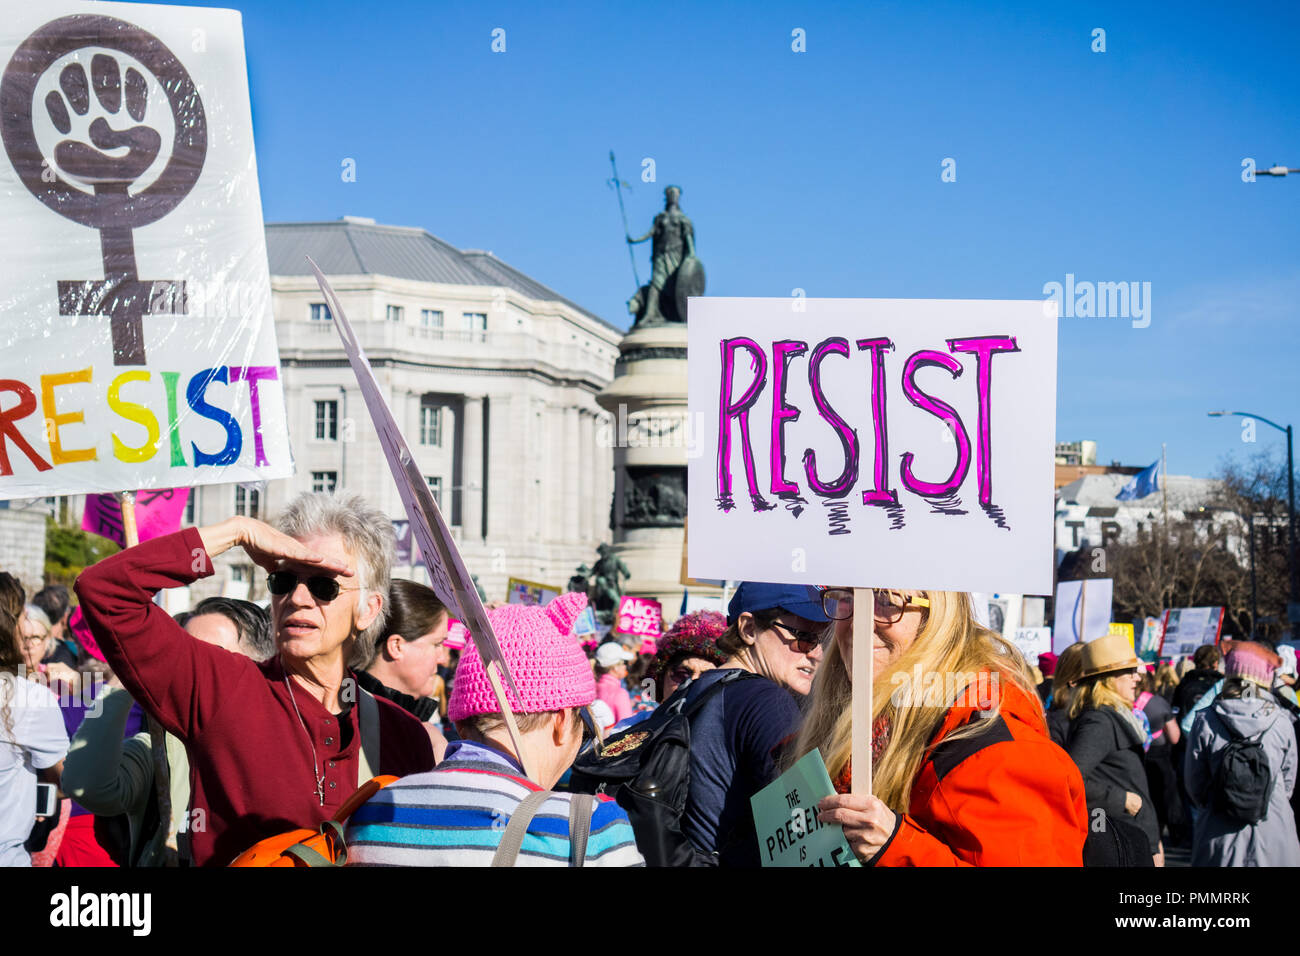 El 20 de enero de 2018, San Francisco / CA / USA - Resistir señales que llevan a la Mujer de Marzo Foto de stock